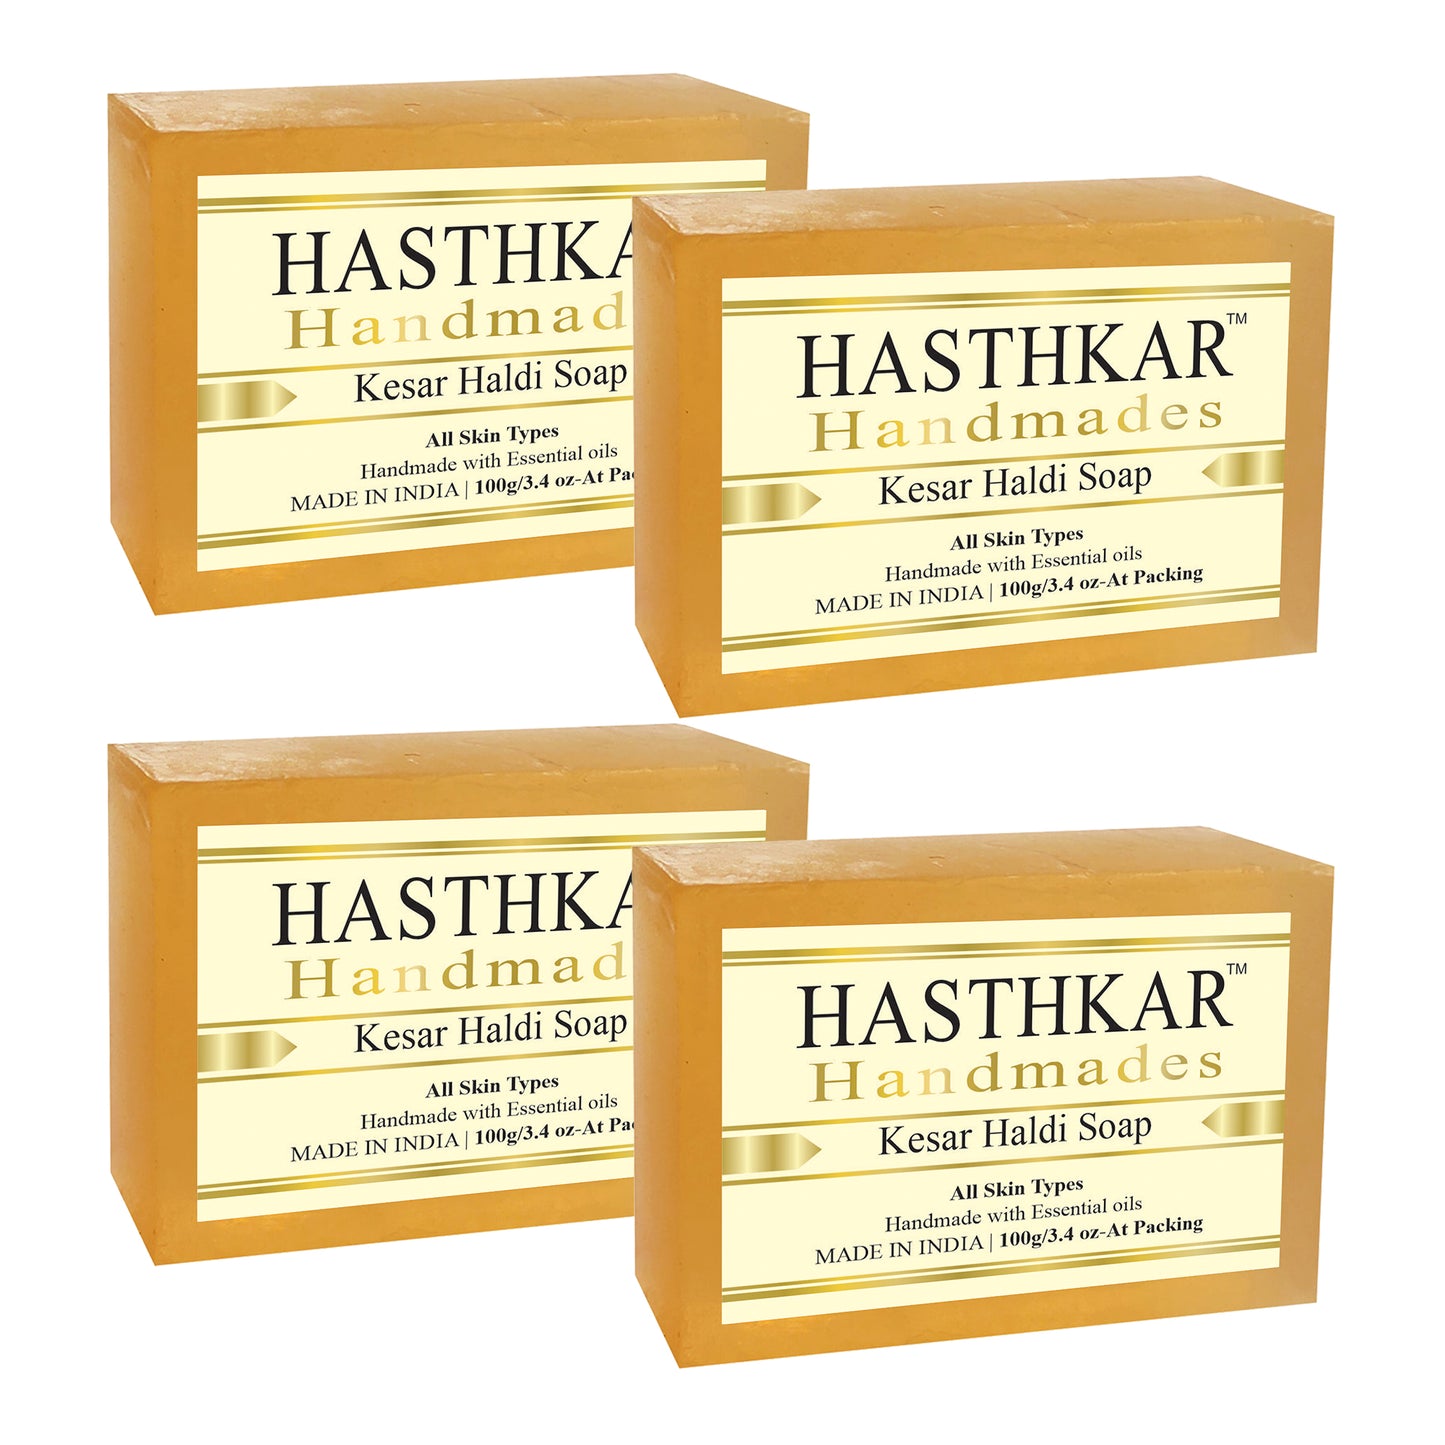 Hasthkar Handmades Glycerine Kesar haldi Soap 100gm Pack of 4